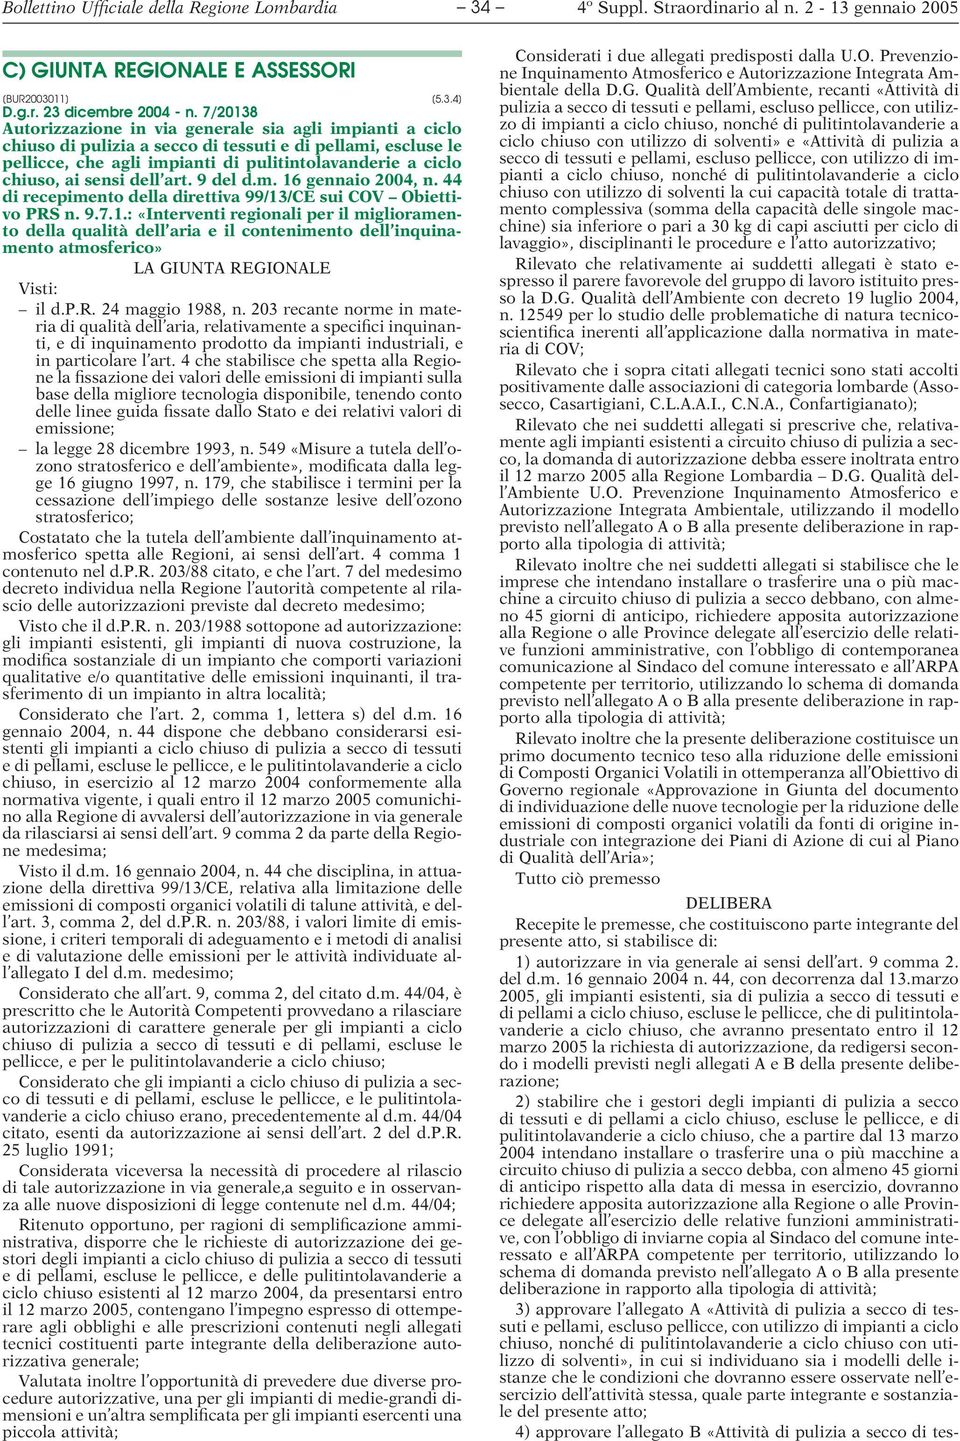 sensi dell art. 9 del d.m. 16 gennaio 2004, n. 44 di recepimento della direttiva 99/13/CE sui COV Obiettivo PRS n. 9.7.1.: «Interventi regionali per il miglioramento della qualità dell aria e il contenimento dell inquinamento atmosferico» LA GIUNTA REGIONALE Visti: il d.